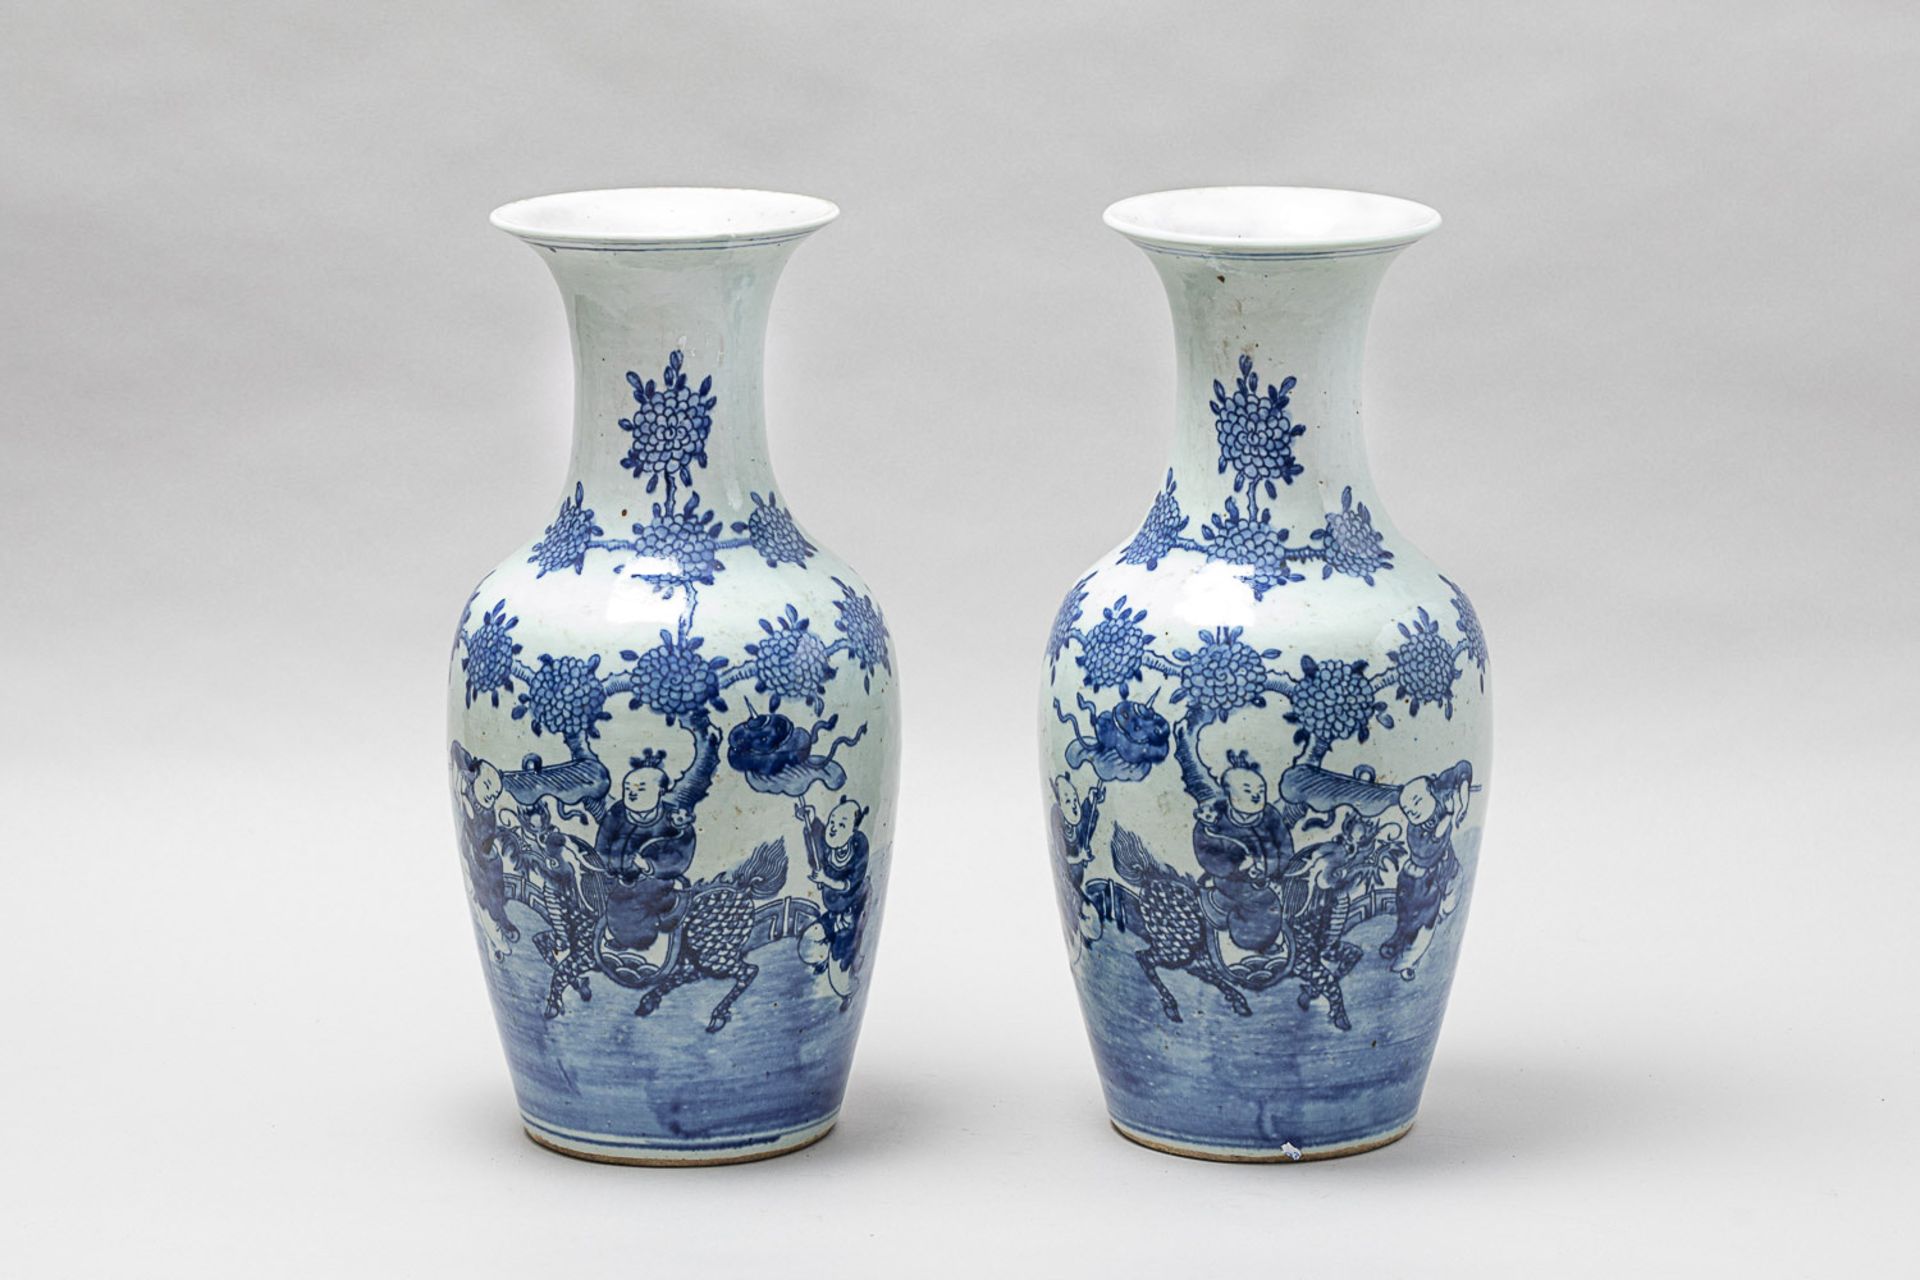 Pair of Chinese Kangxi (1654-1722) porcelain vases